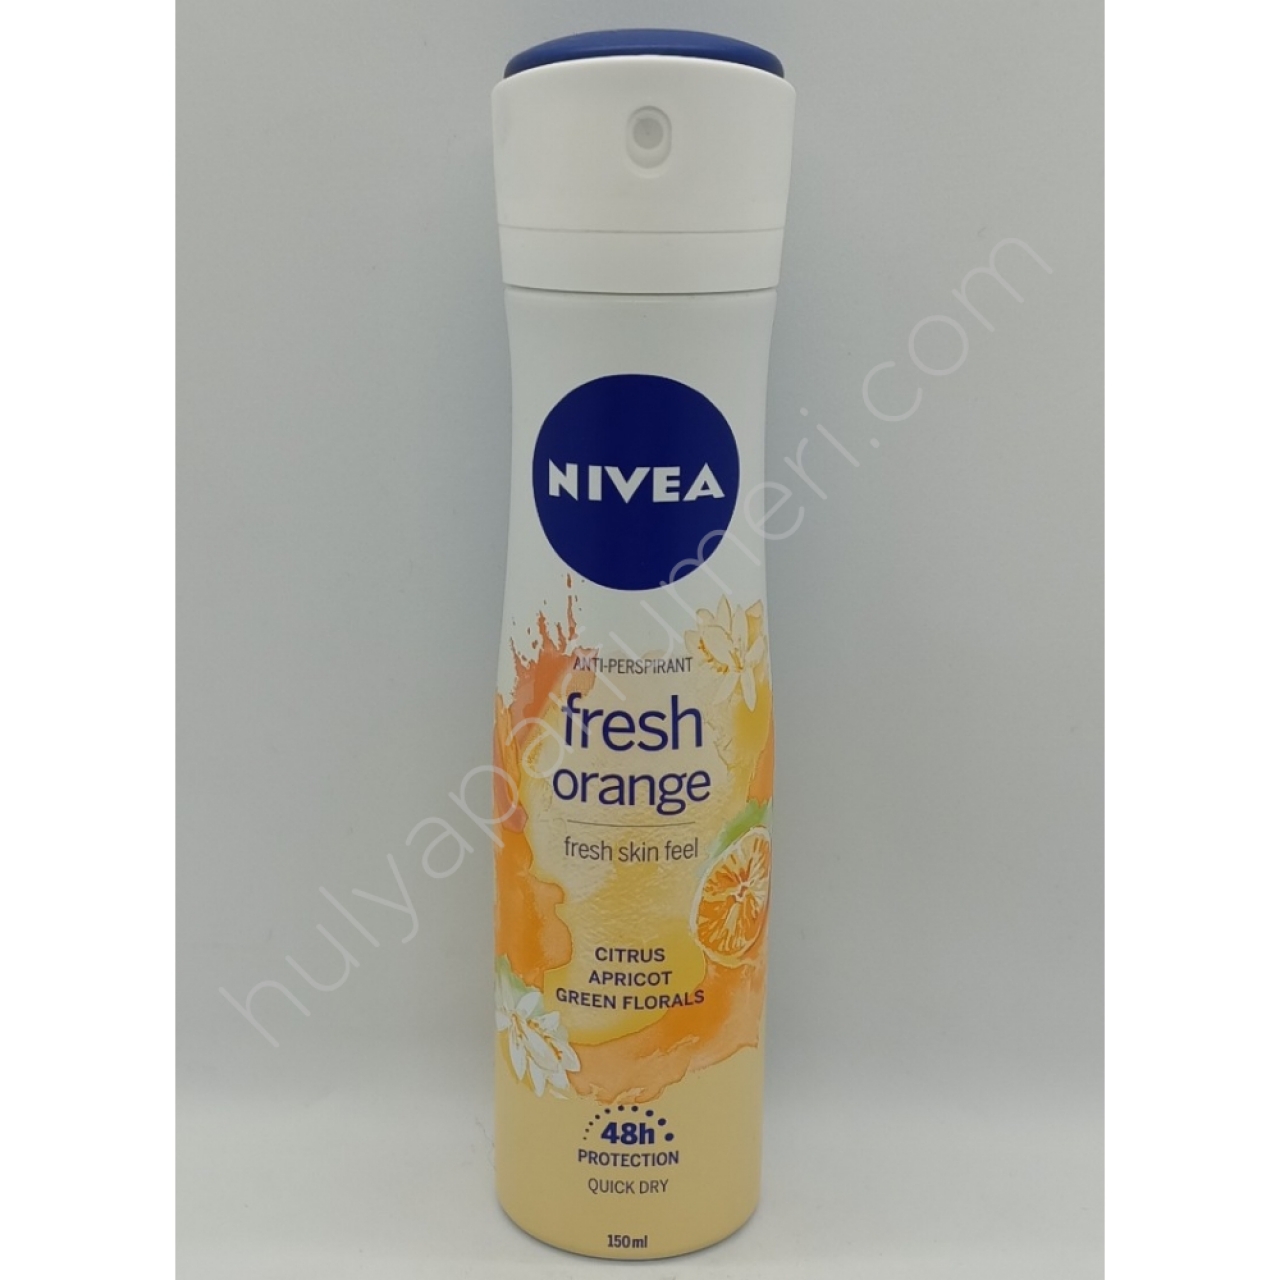 Nıvea Fresh Orange Kadın Deodorant 150 Ml